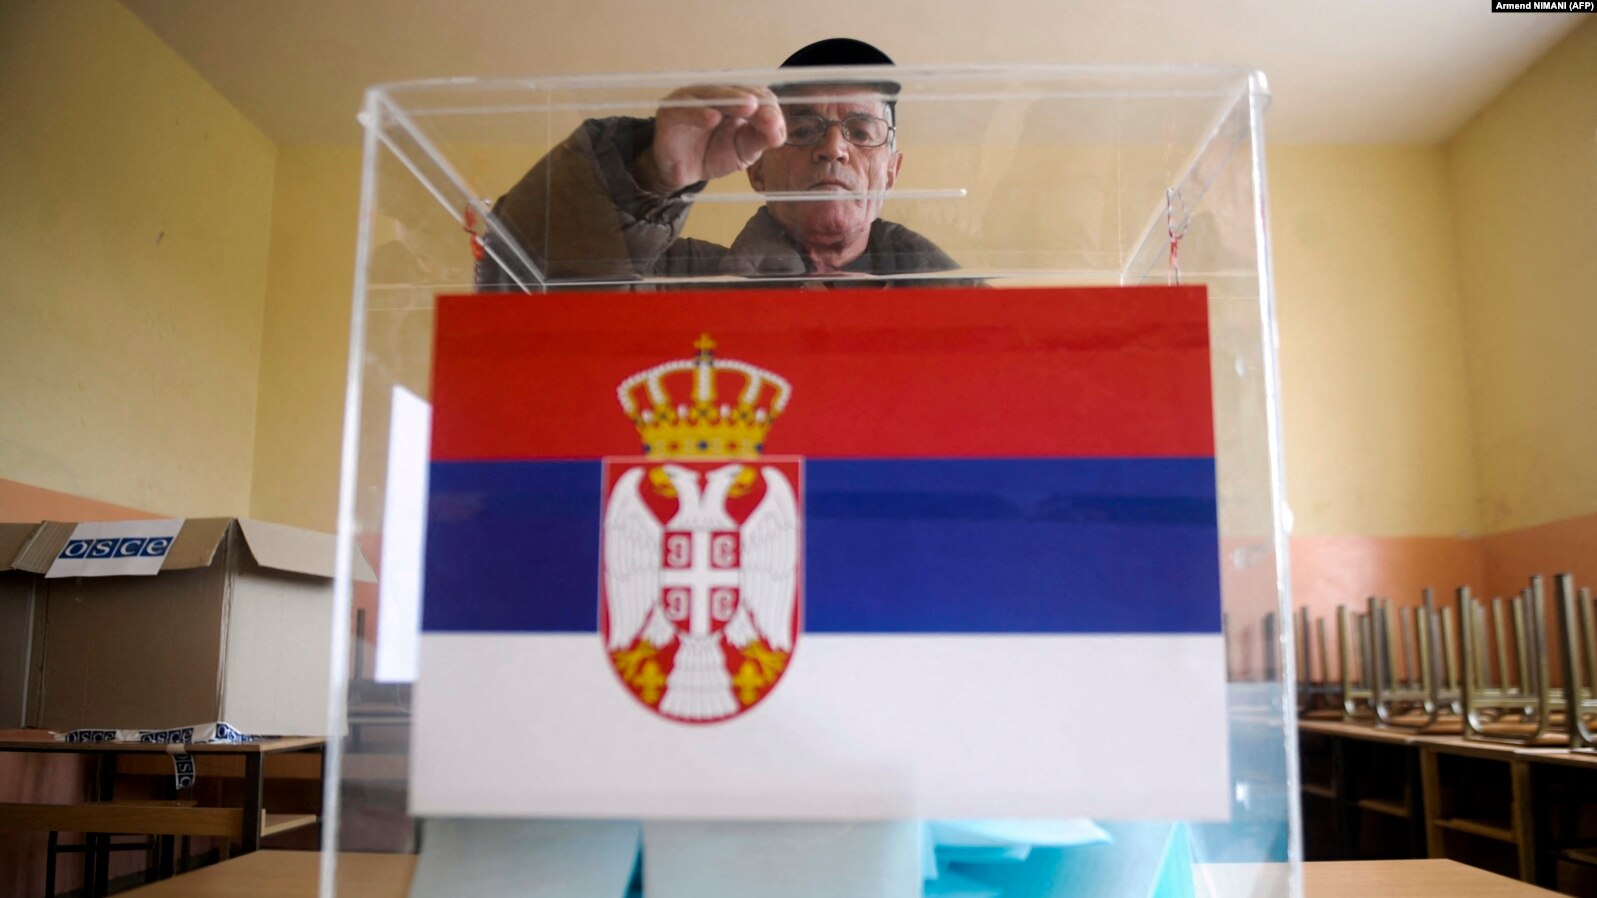 Zgjedhjet në Serbi.